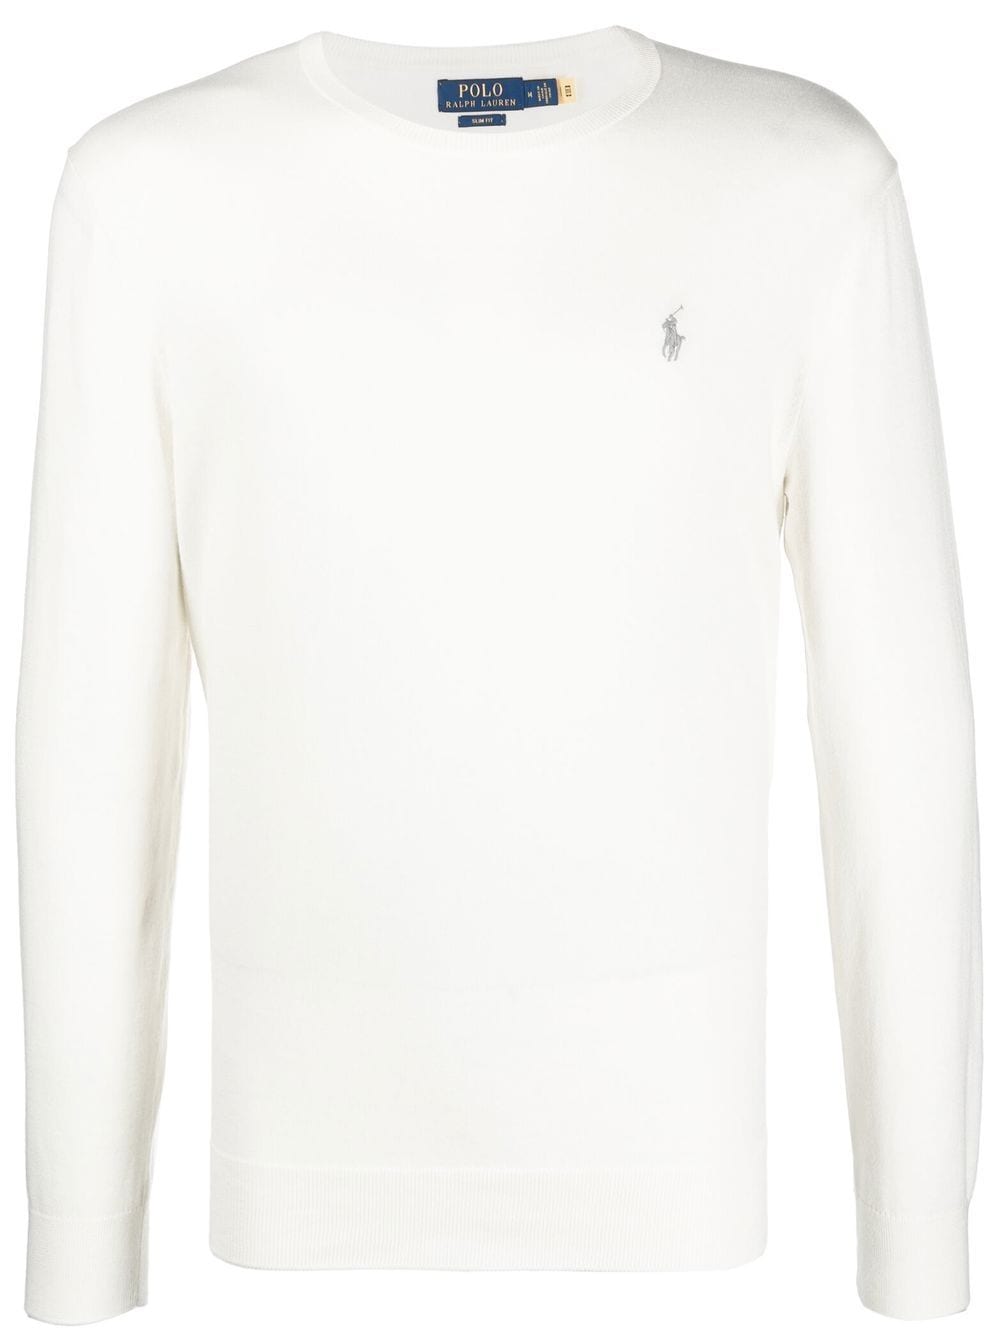 Polo Ralph Lauren Sweater - Beige